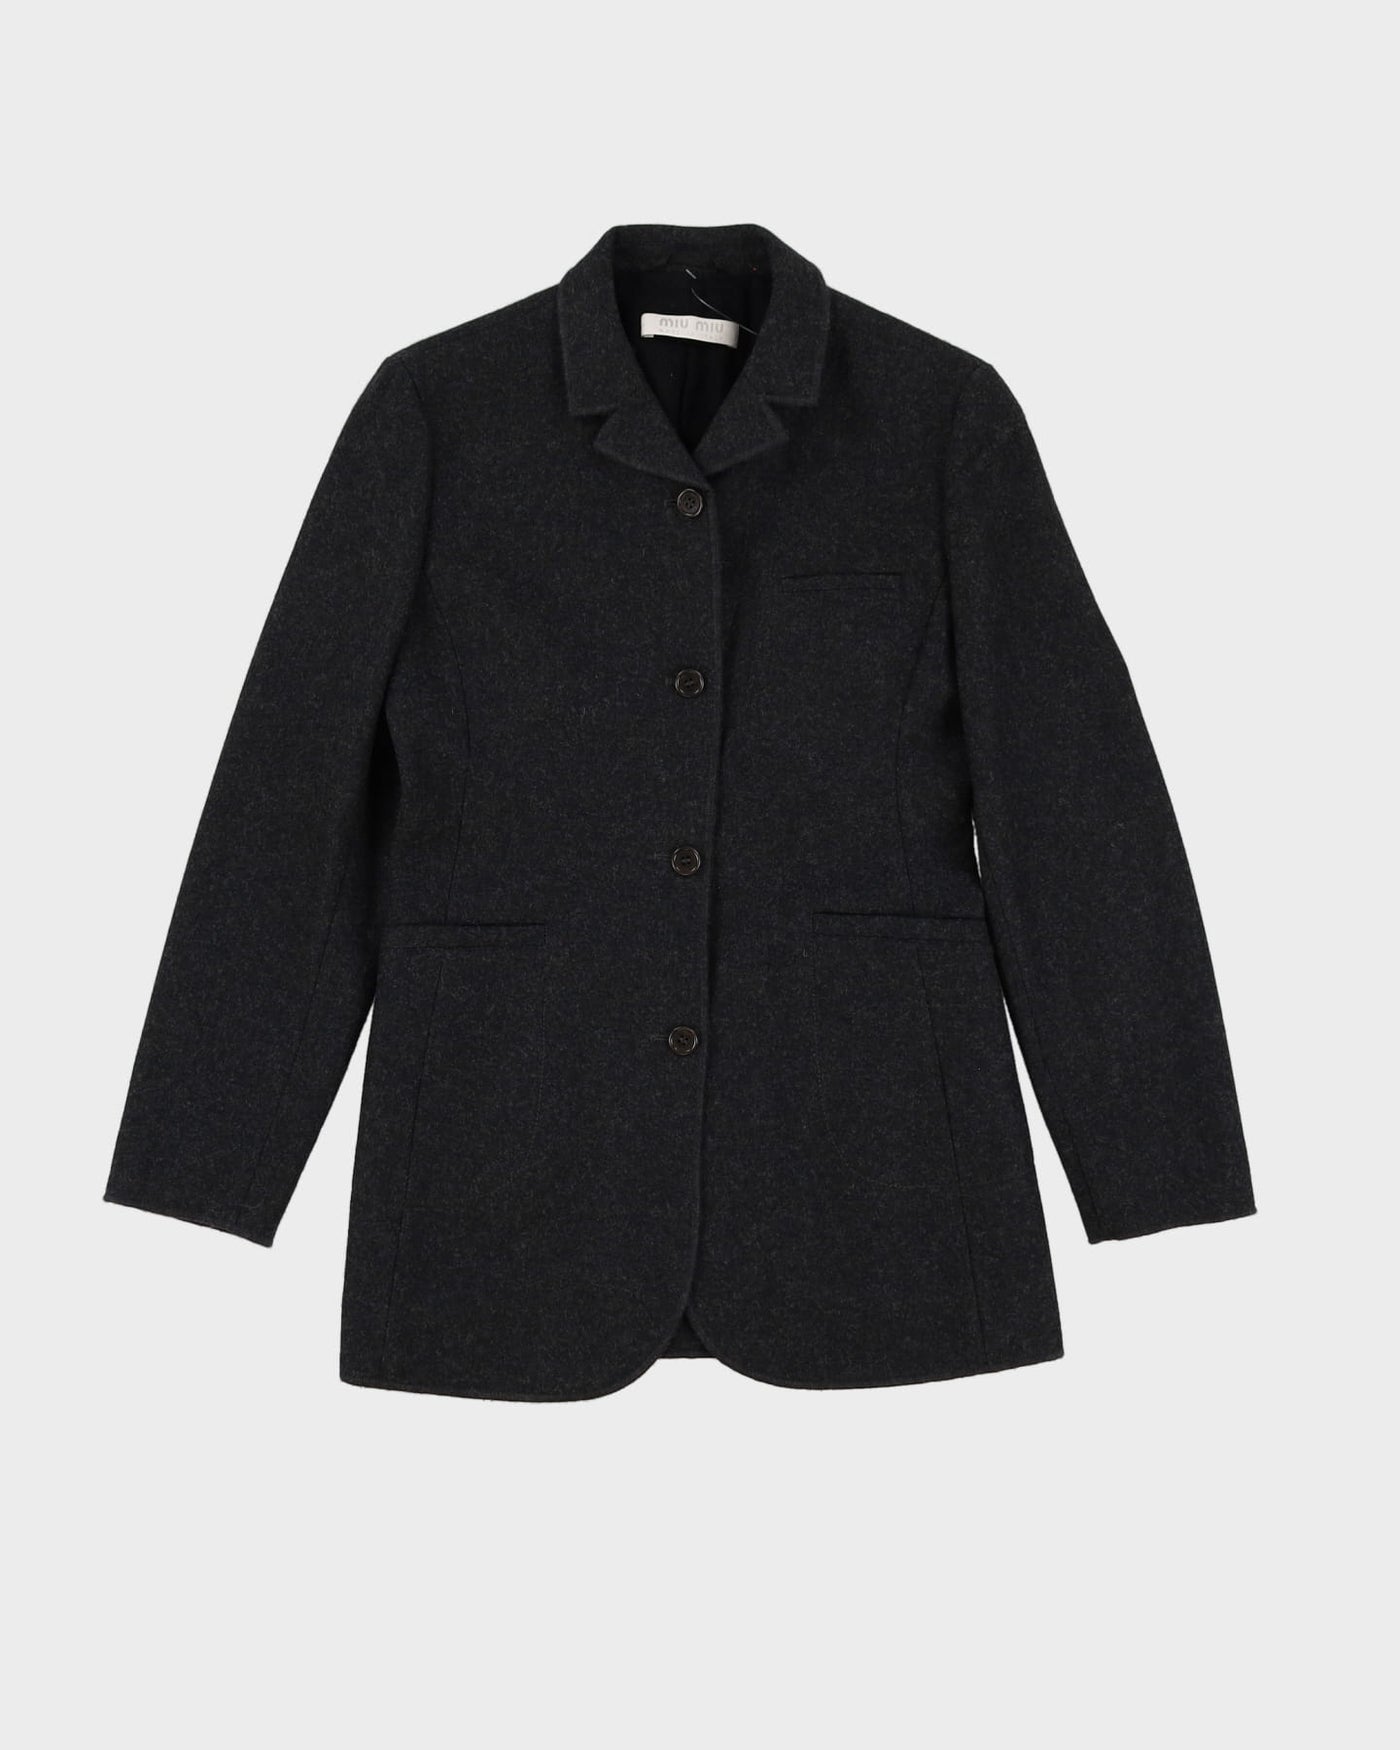 Miu Miu Grey Wool Tailored Blazer Jacket - XS